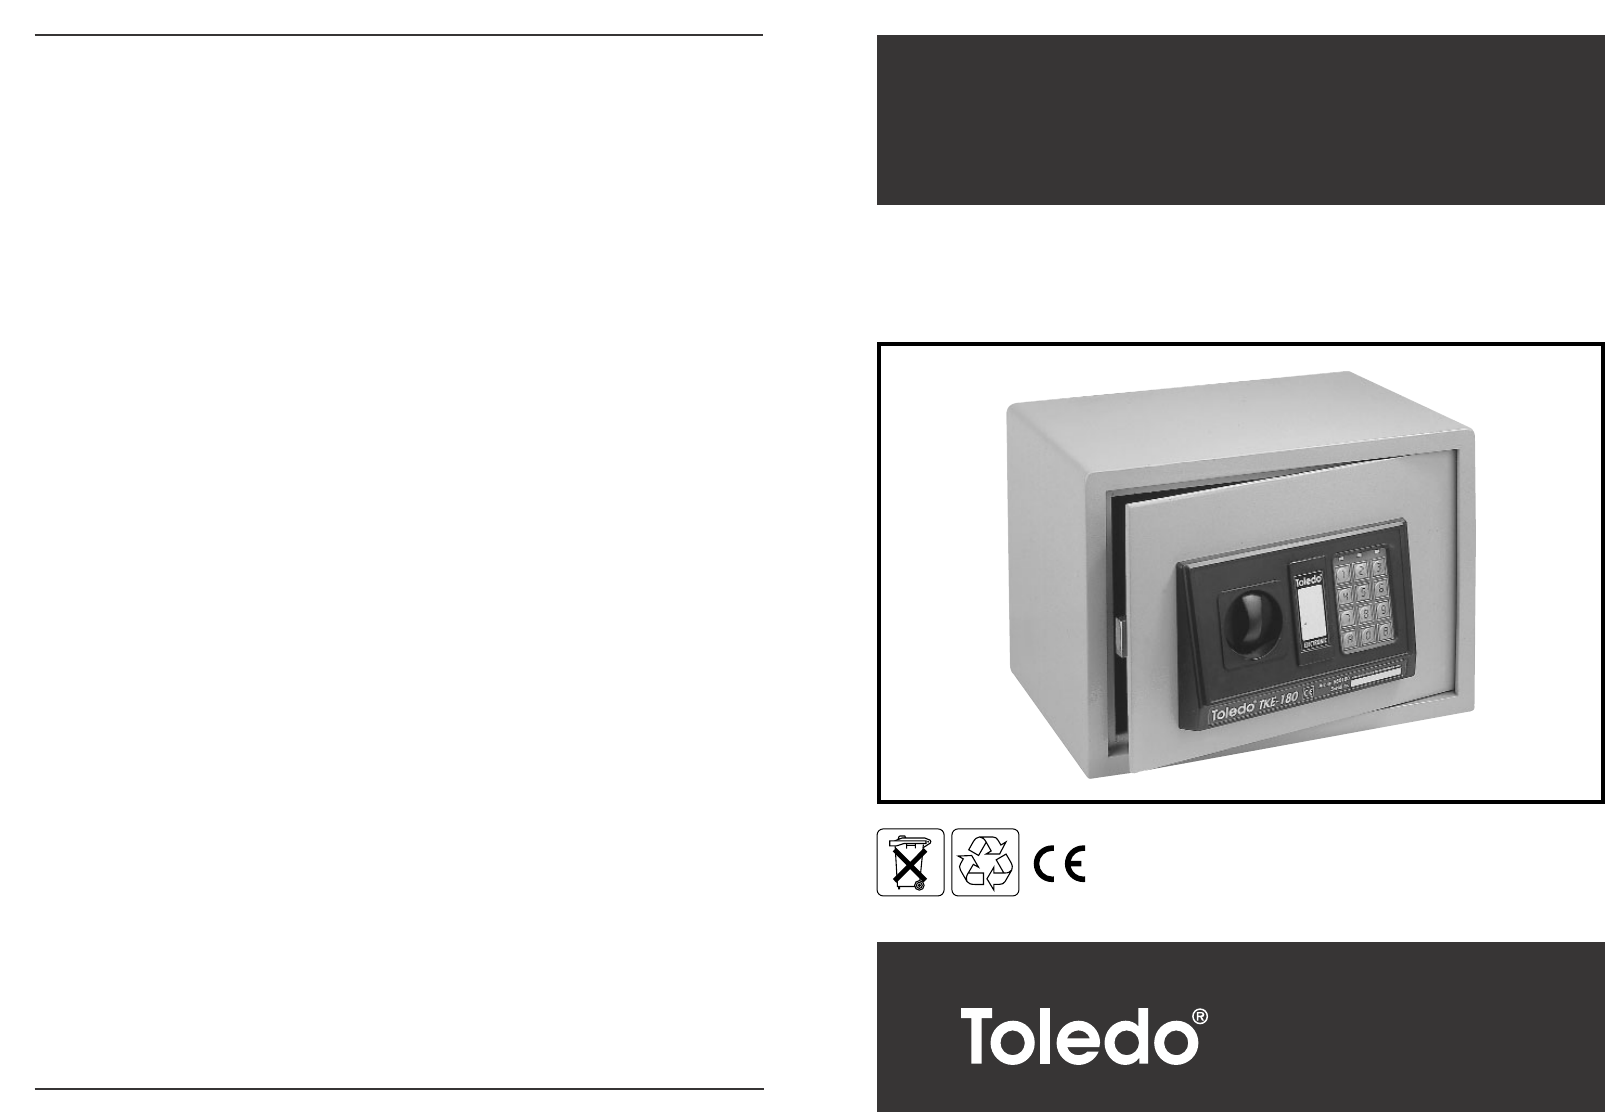 Handleiding Toledo Kluis 1 van 2) (Nederlands)